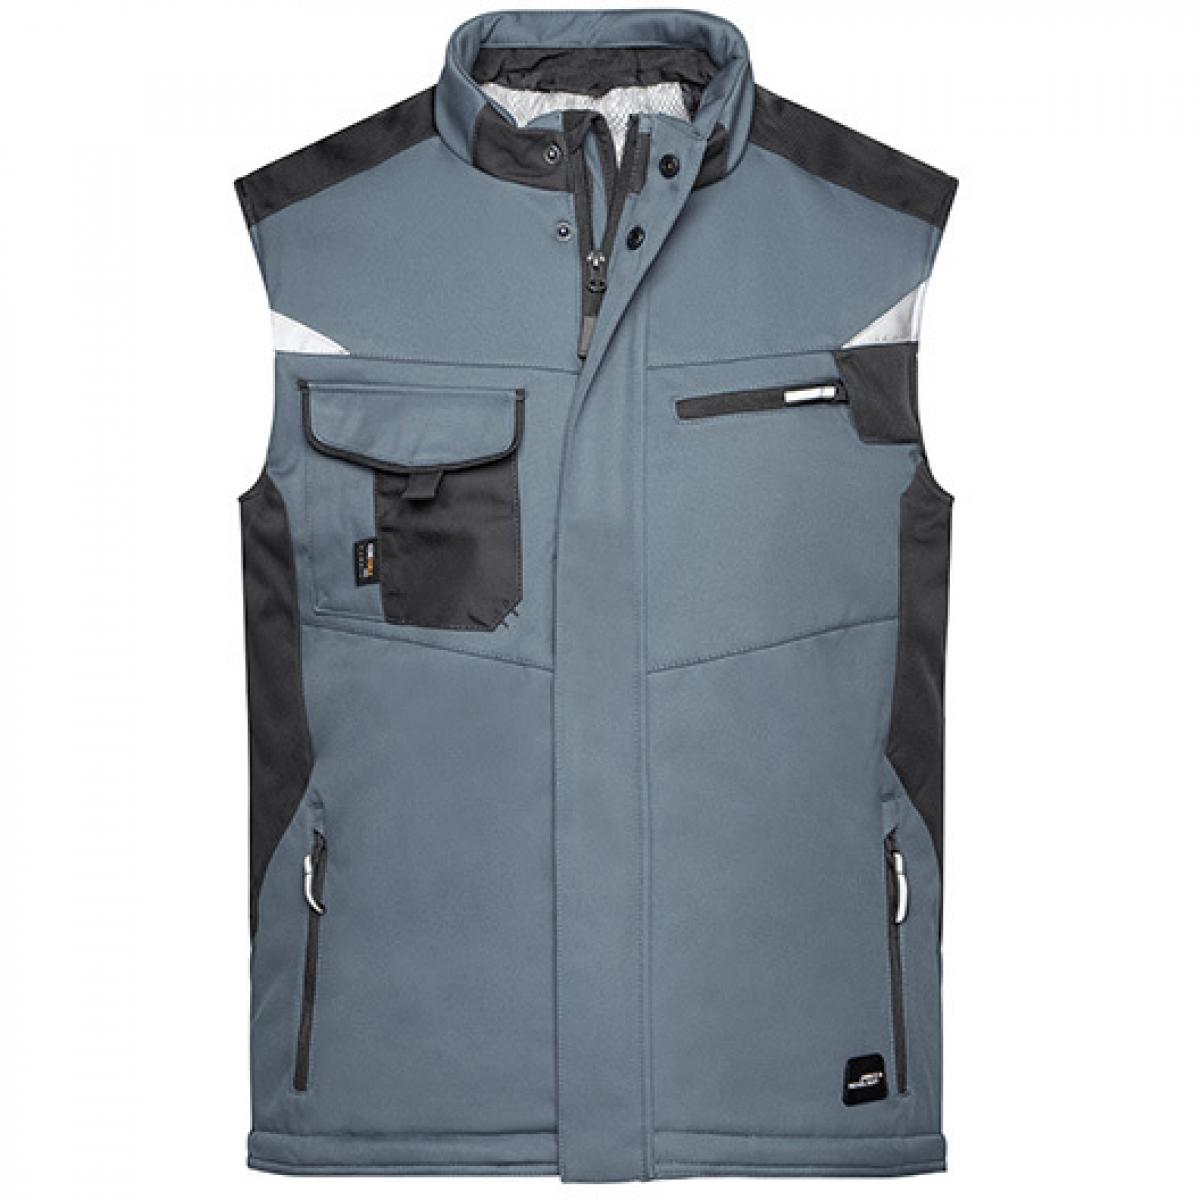 Hersteller: James+Nicholson Herstellernummer: JN825 Artikelbezeichnung: Herren Jacke, Craftsmen Softshell Vest -STRONG- Farbe: Carbon/Black